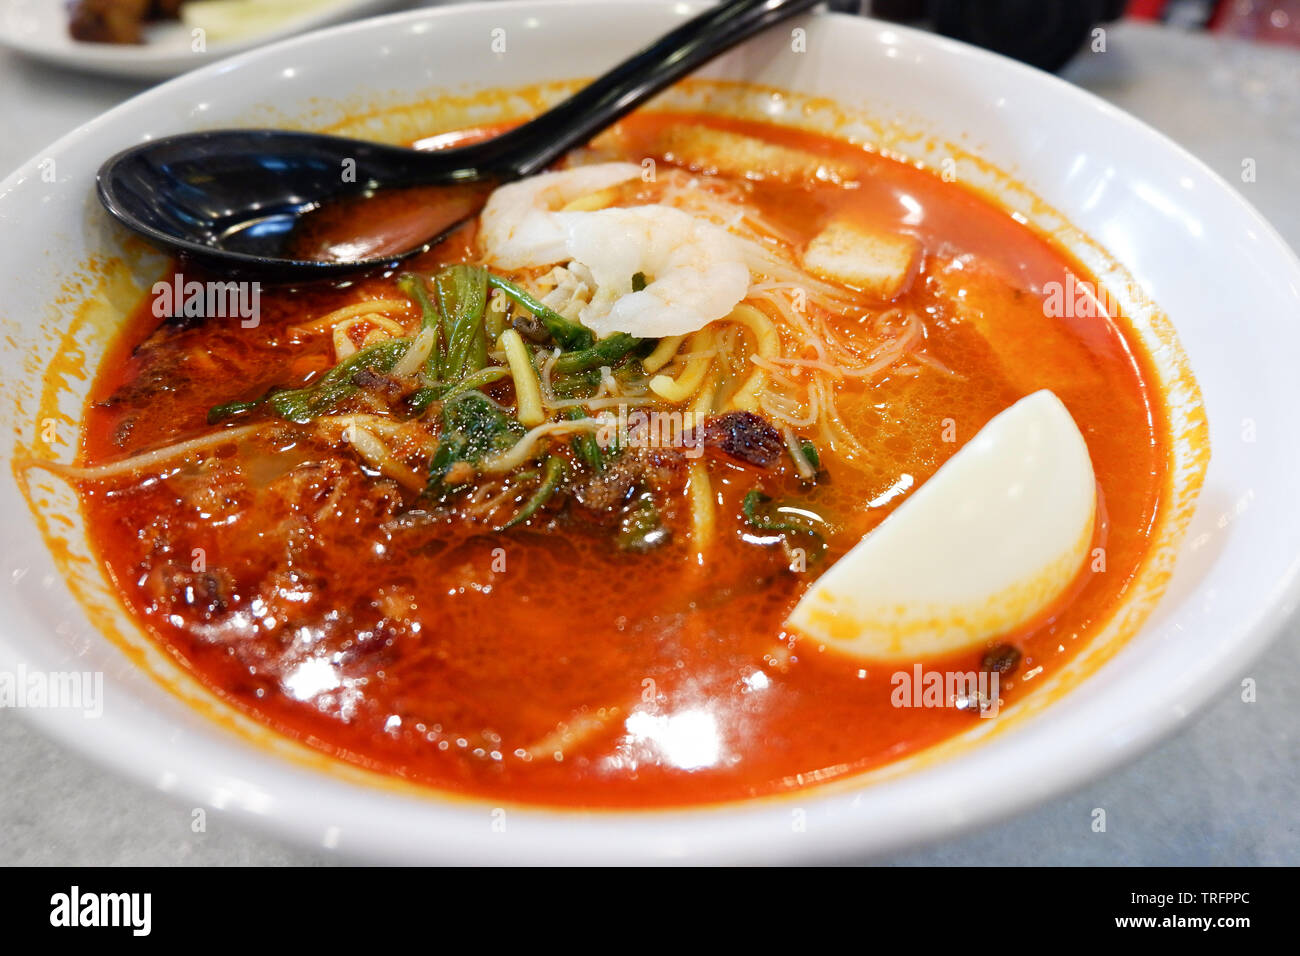 Curry Suppe Meeresfrüchte Garnelen mit Kokosmilch und Gemüse Kräuter  Gewürze würzig in der Schüssel/Malaysischen essen Nudelsuppe  Stockfotografie - Alamy